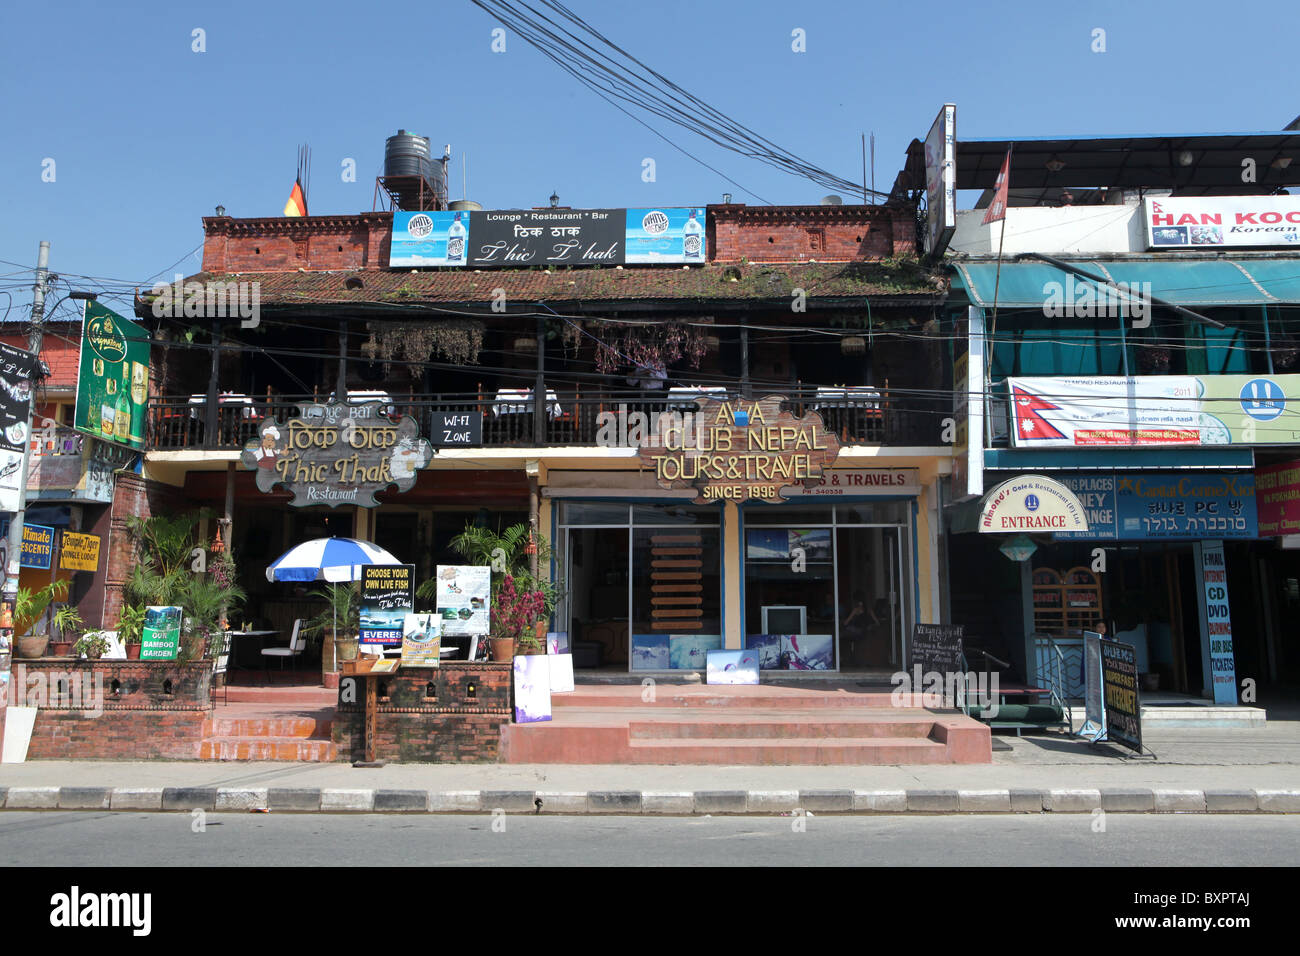 Voyage et Tour boutiques dans la ville de Pokhara au Népal. Banque D'Images